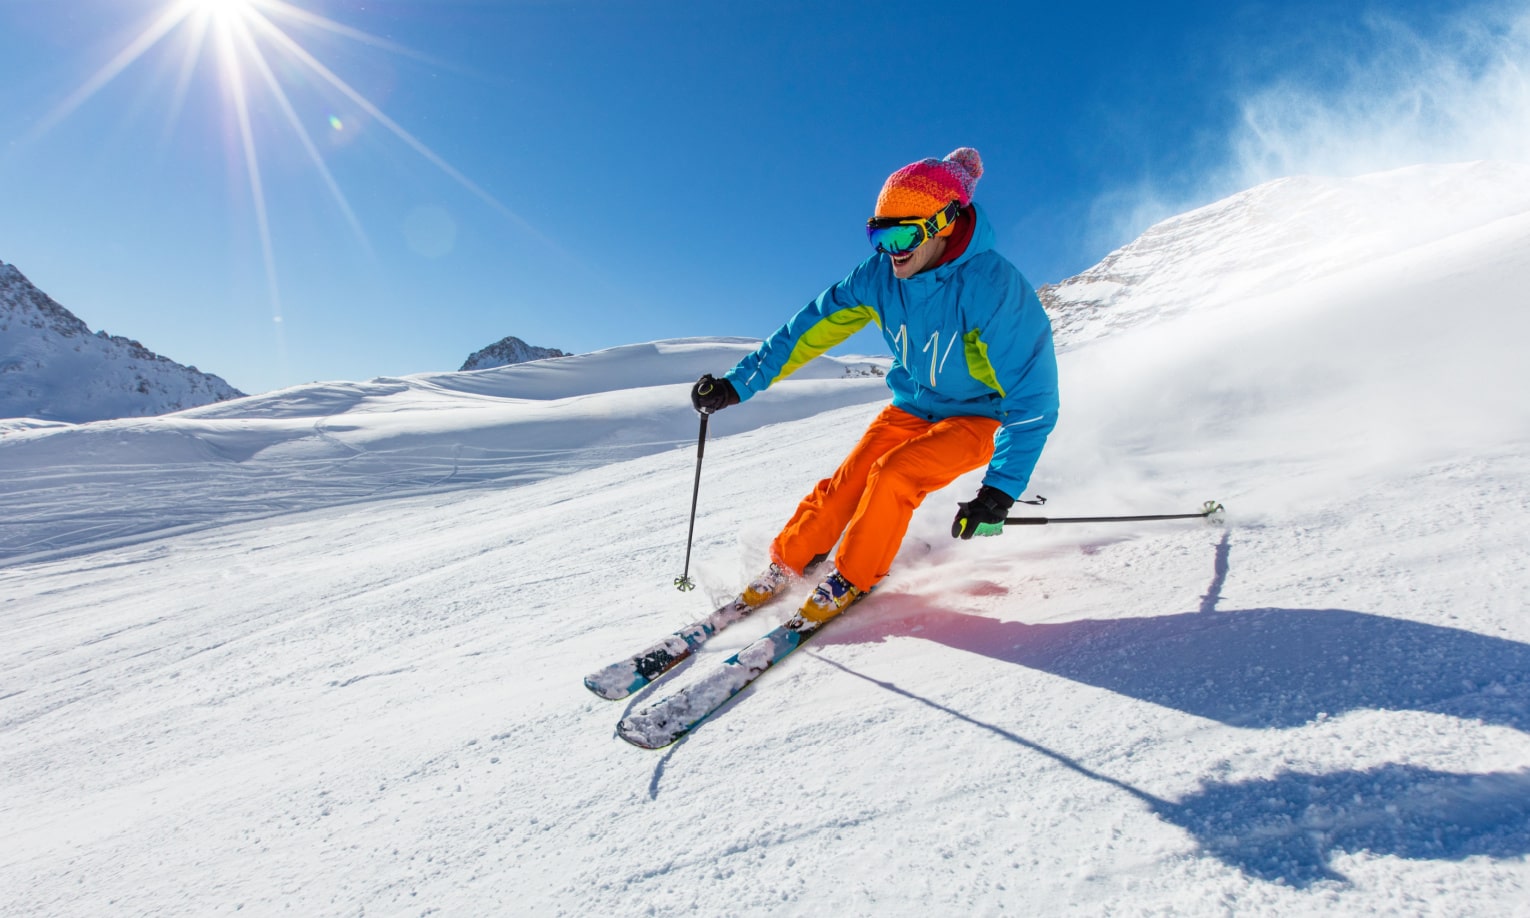 мужчина в яркой лыжной одежде катается на лыжах в горах